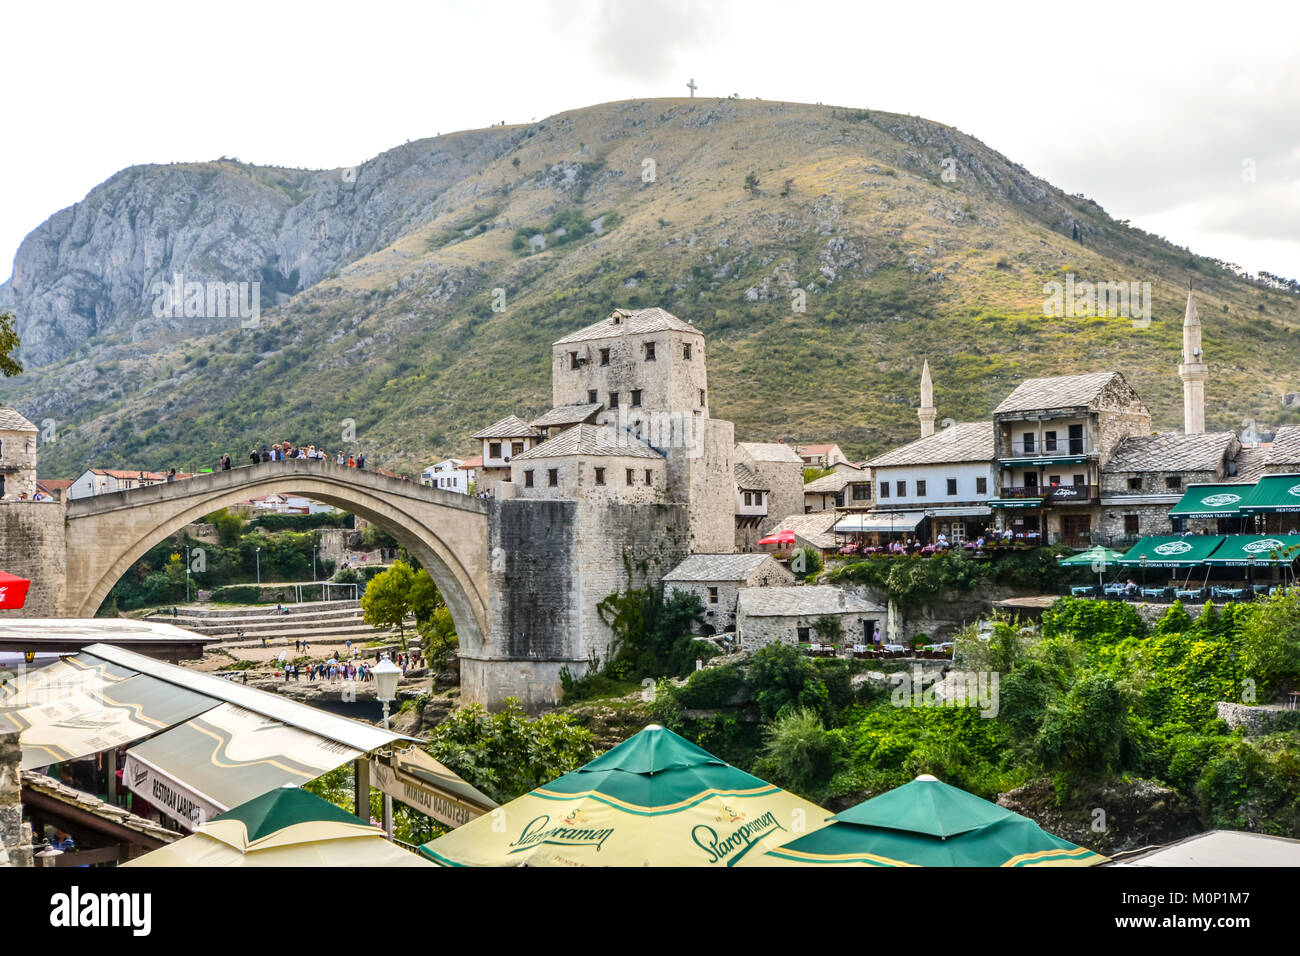 La croix sur Mostar sur Hum Hill se trouve au sommet de la montagne surplombant la vieille ville de Mostar, Bosnie Herzégovine avec le vieux pont ci-dessous Banque D'Images